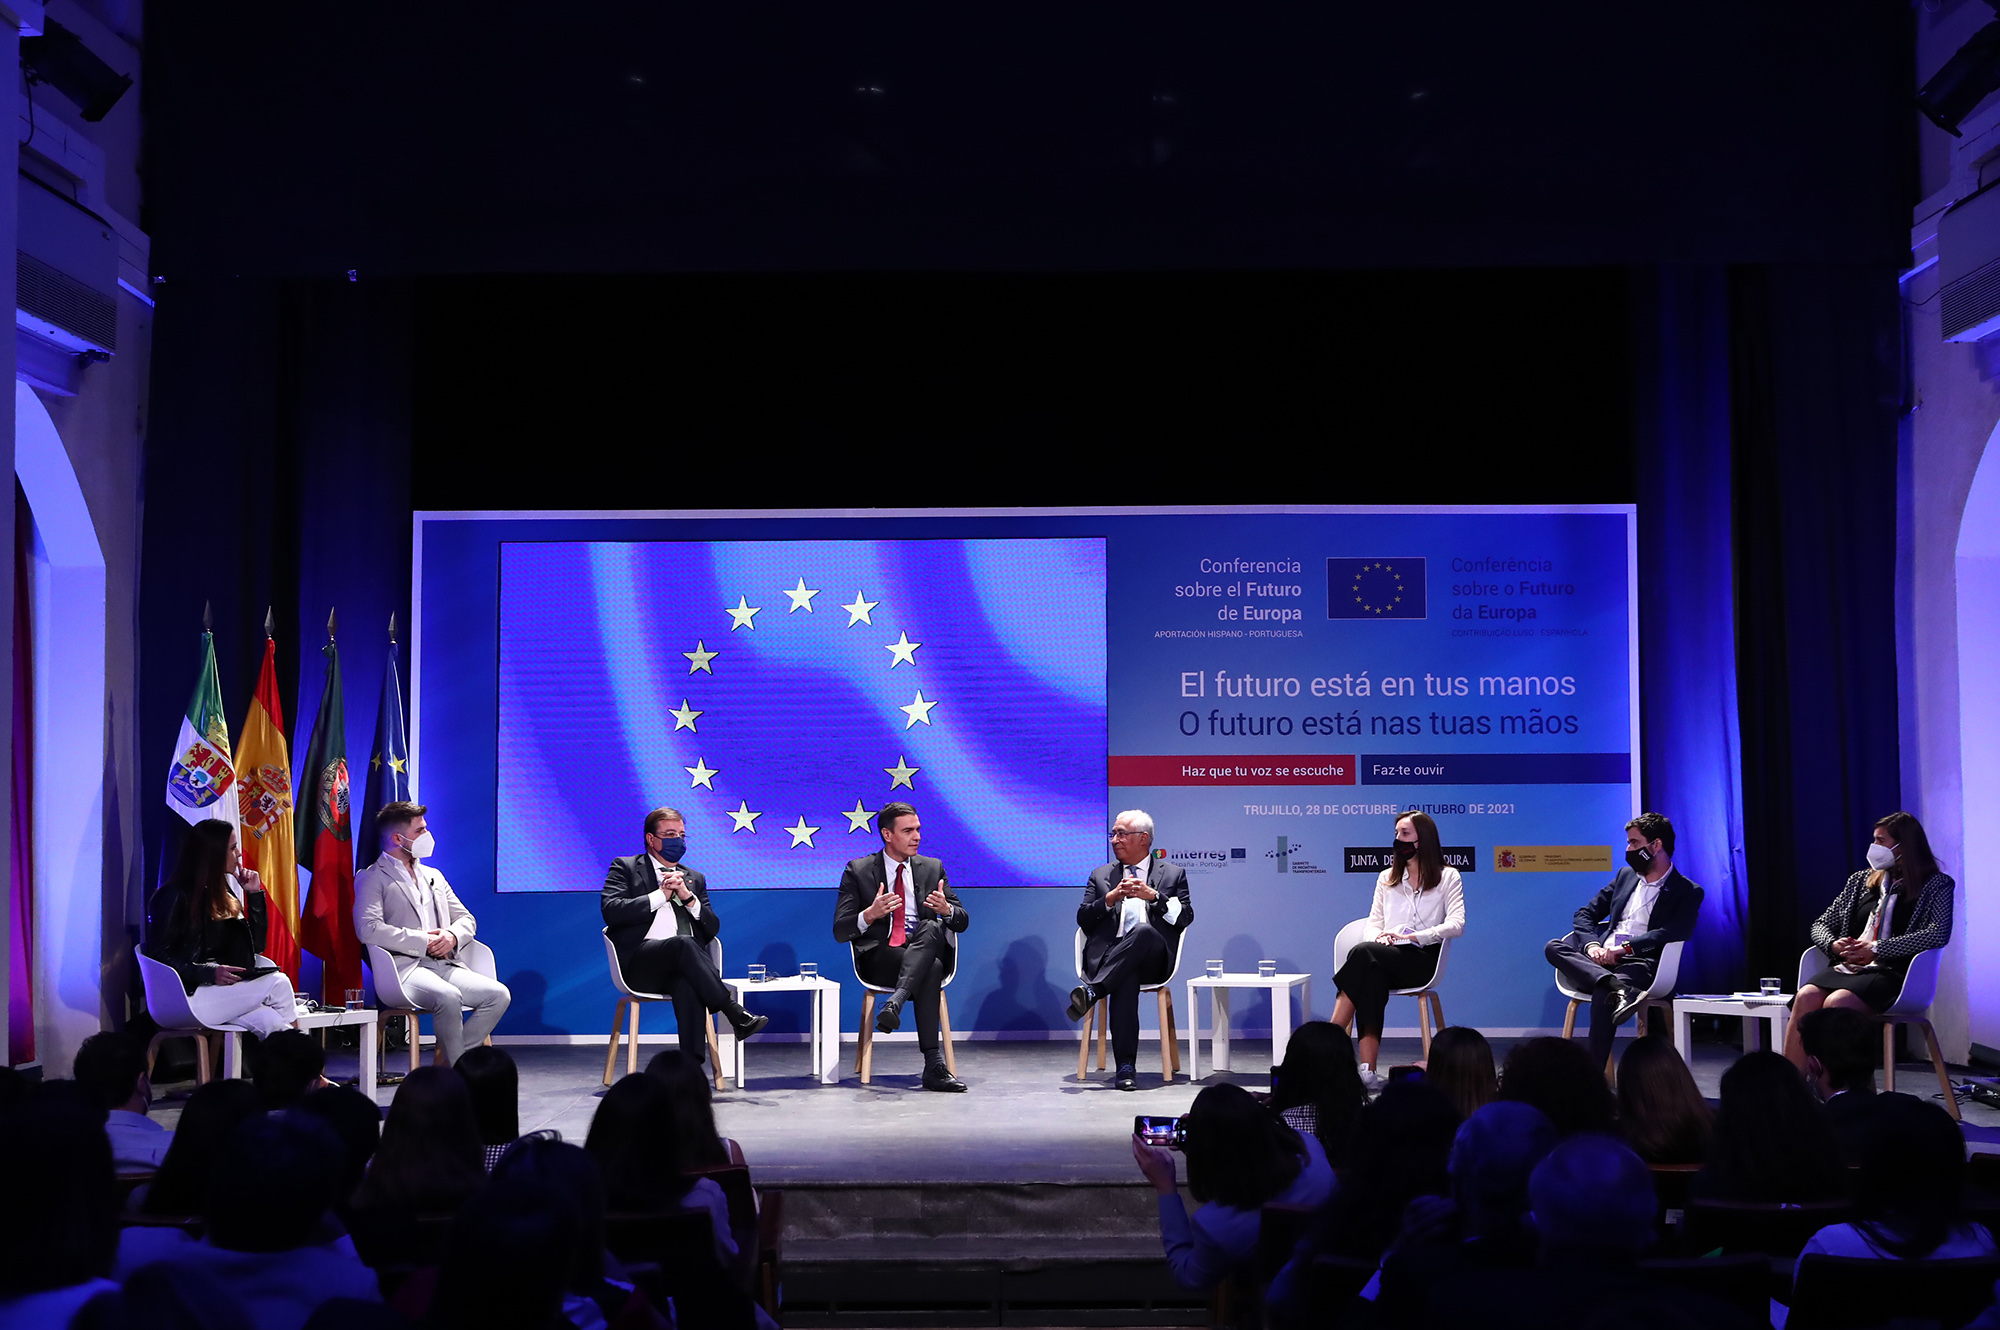 Encuentro con jóvenes españoles y portugueses sobre el futuro de Europa